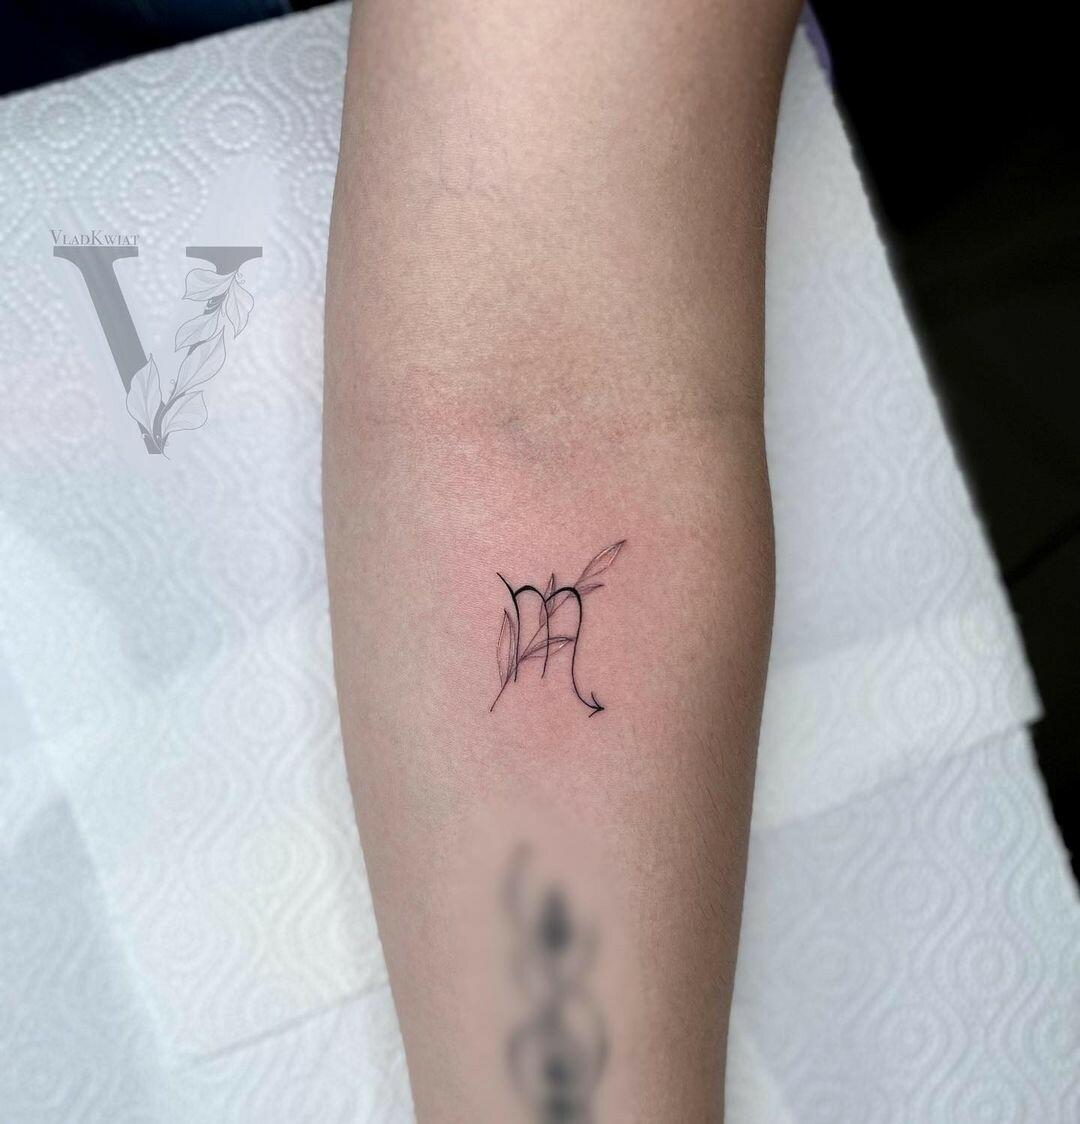 Inksearch tattoo VladKwiat